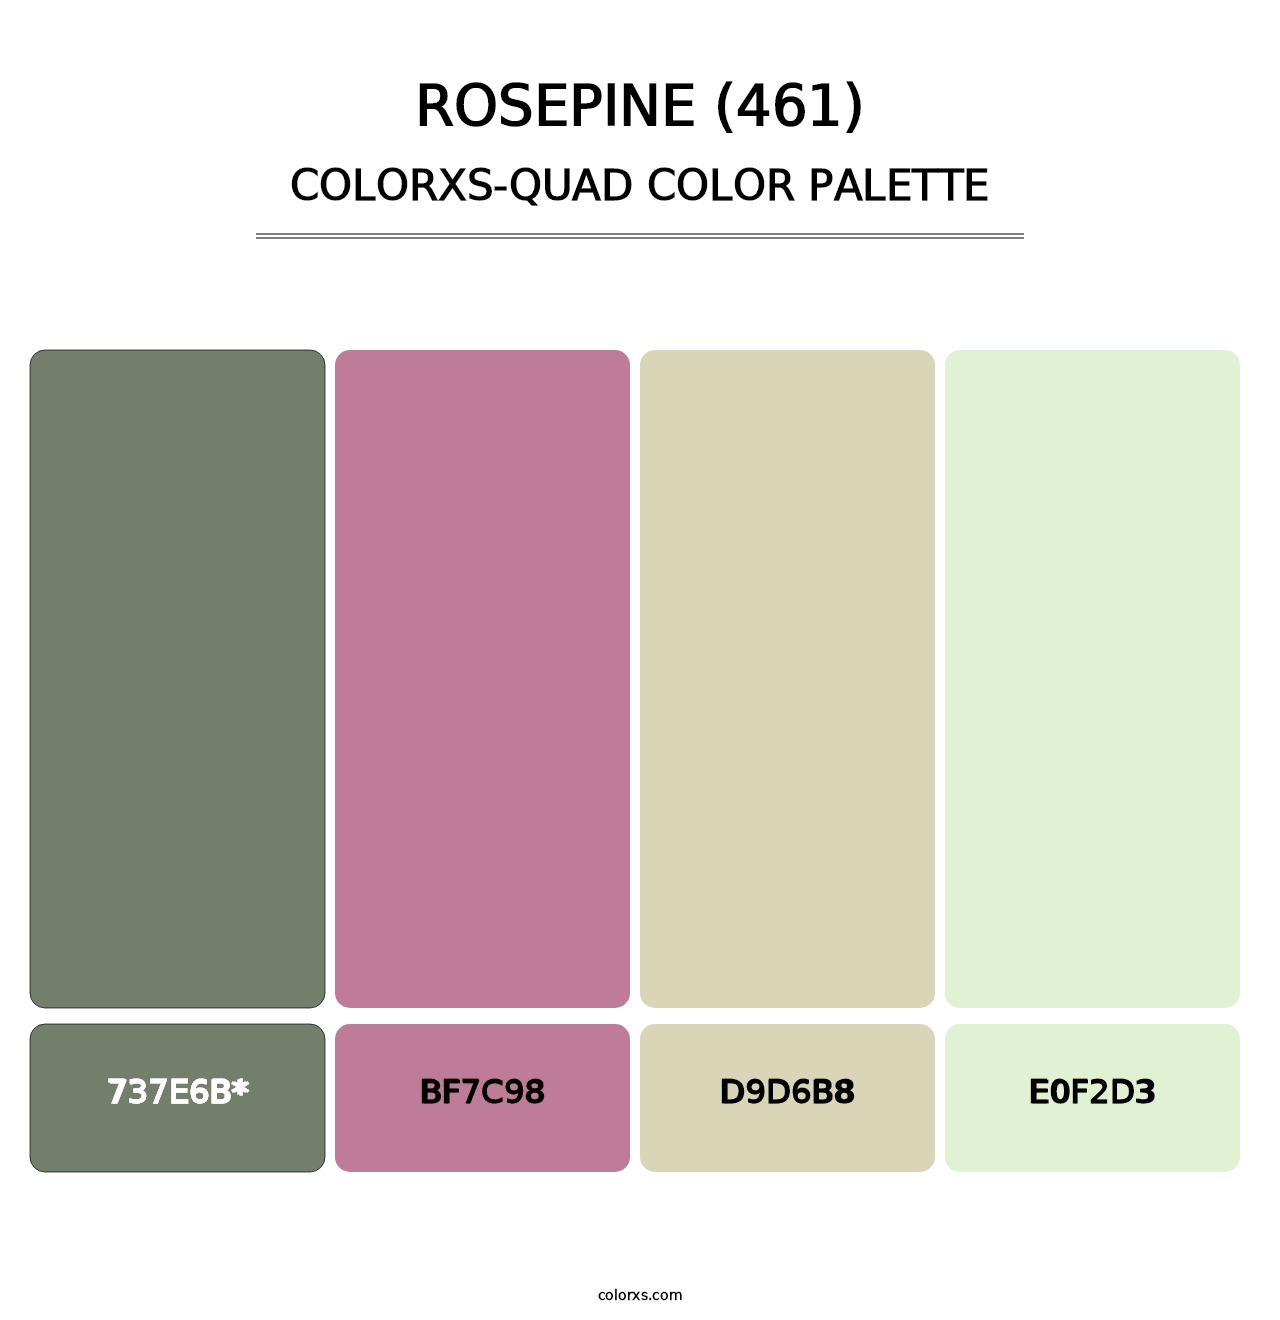 Rosepine (461) - Colorxs Quad Palette